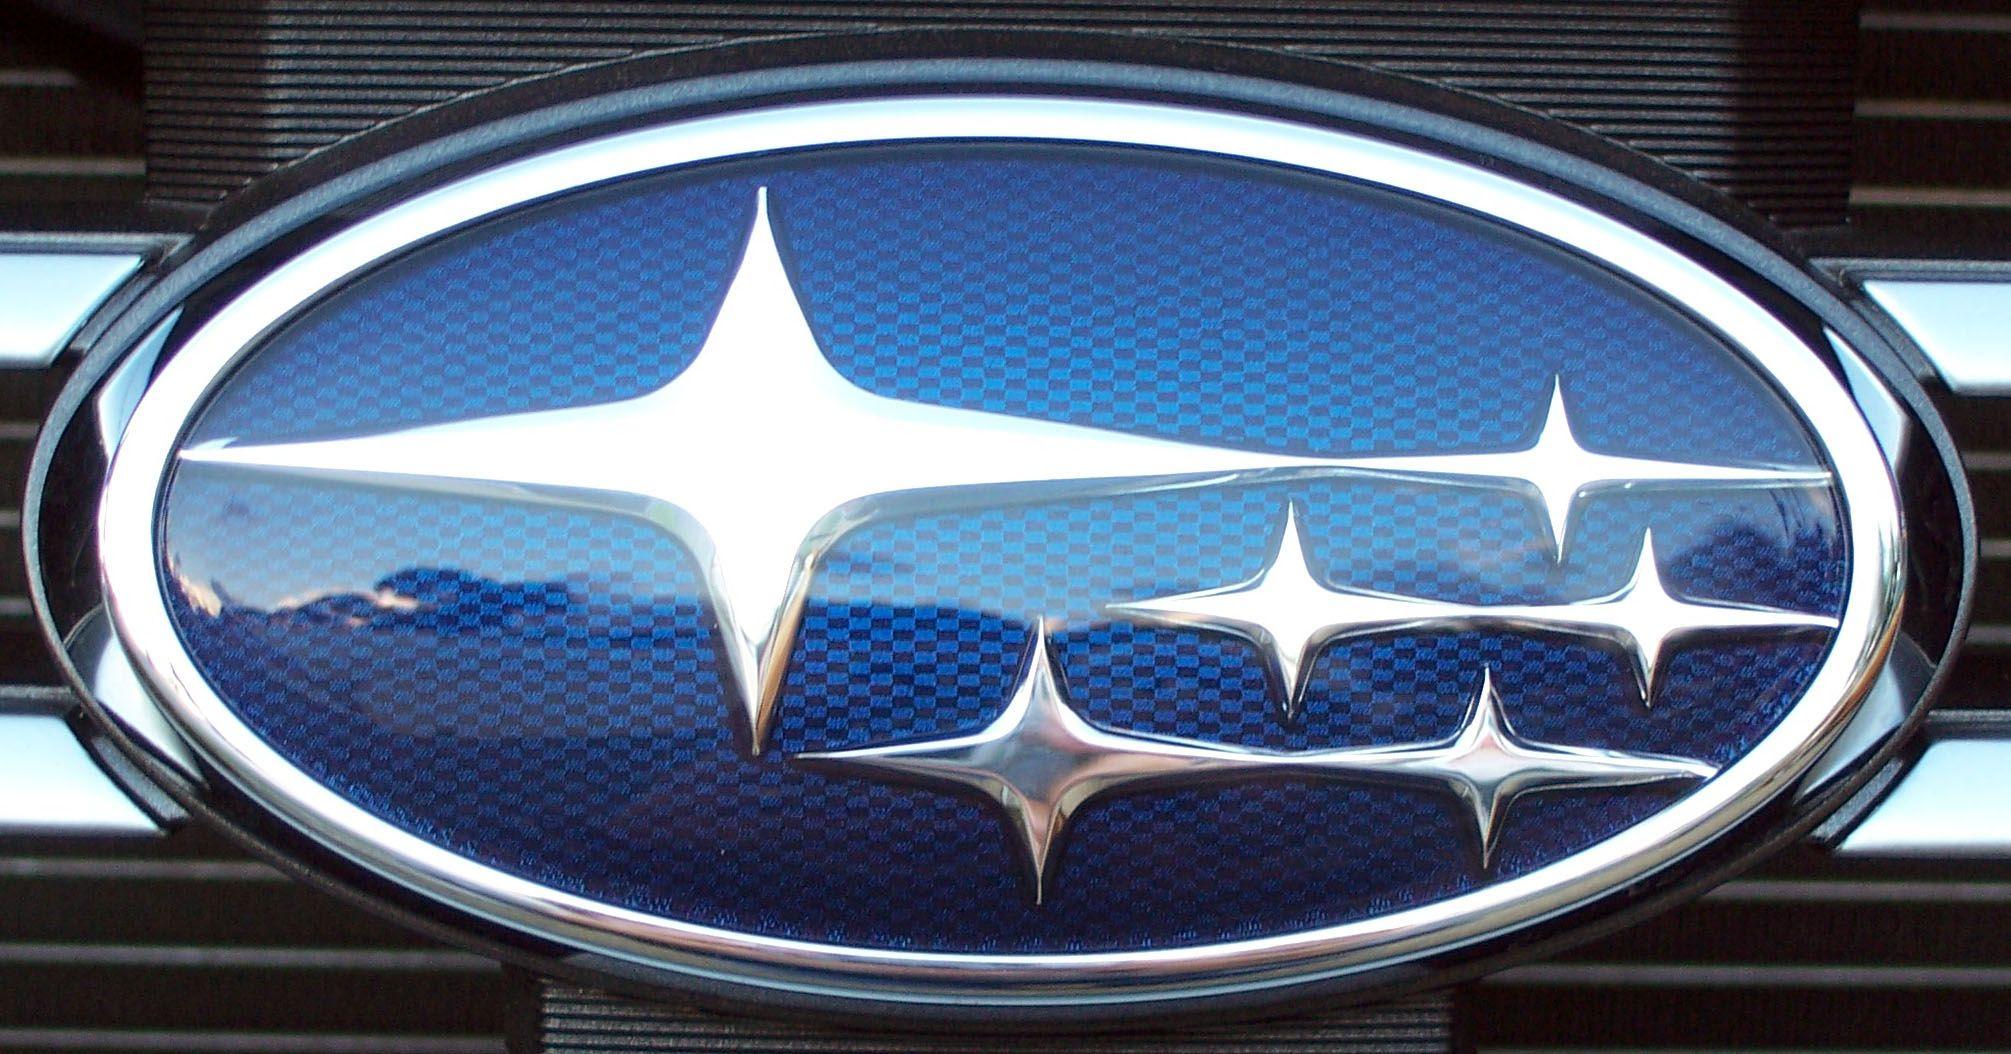 Blue Oval Car Logo - Subaru Logo, Subaru Car Symbol Meaning and History. Car Brand Names.com